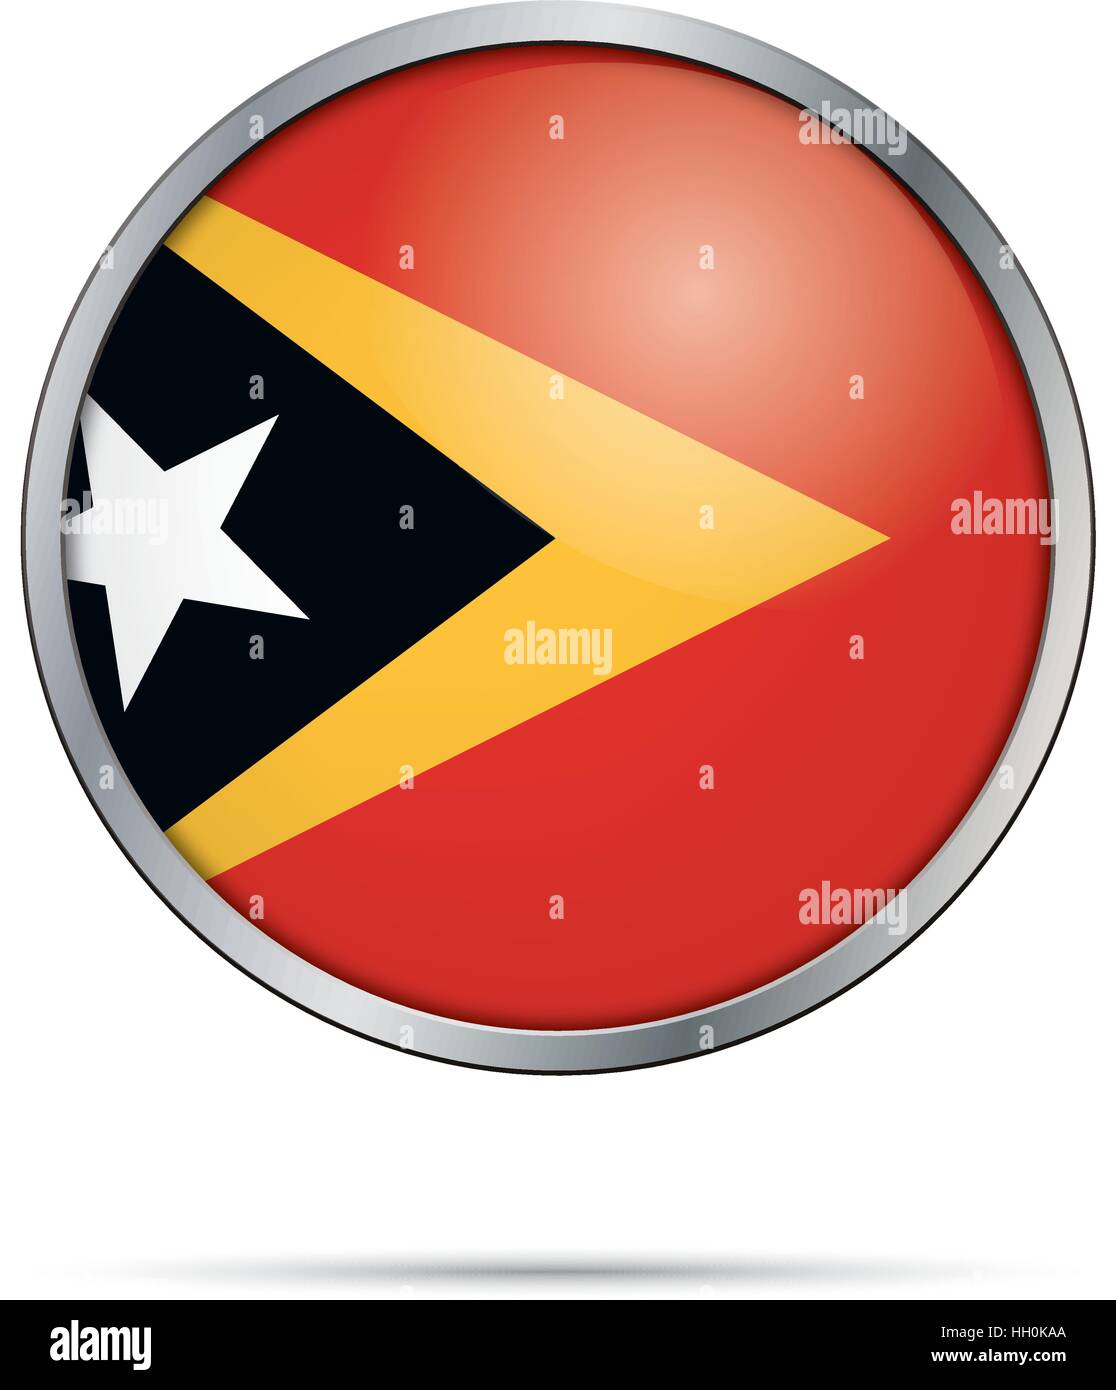 Vektor-Timor-Leste Flagge in Glas-Knopf-Stil mit Metallrahmen. Stock Vektor